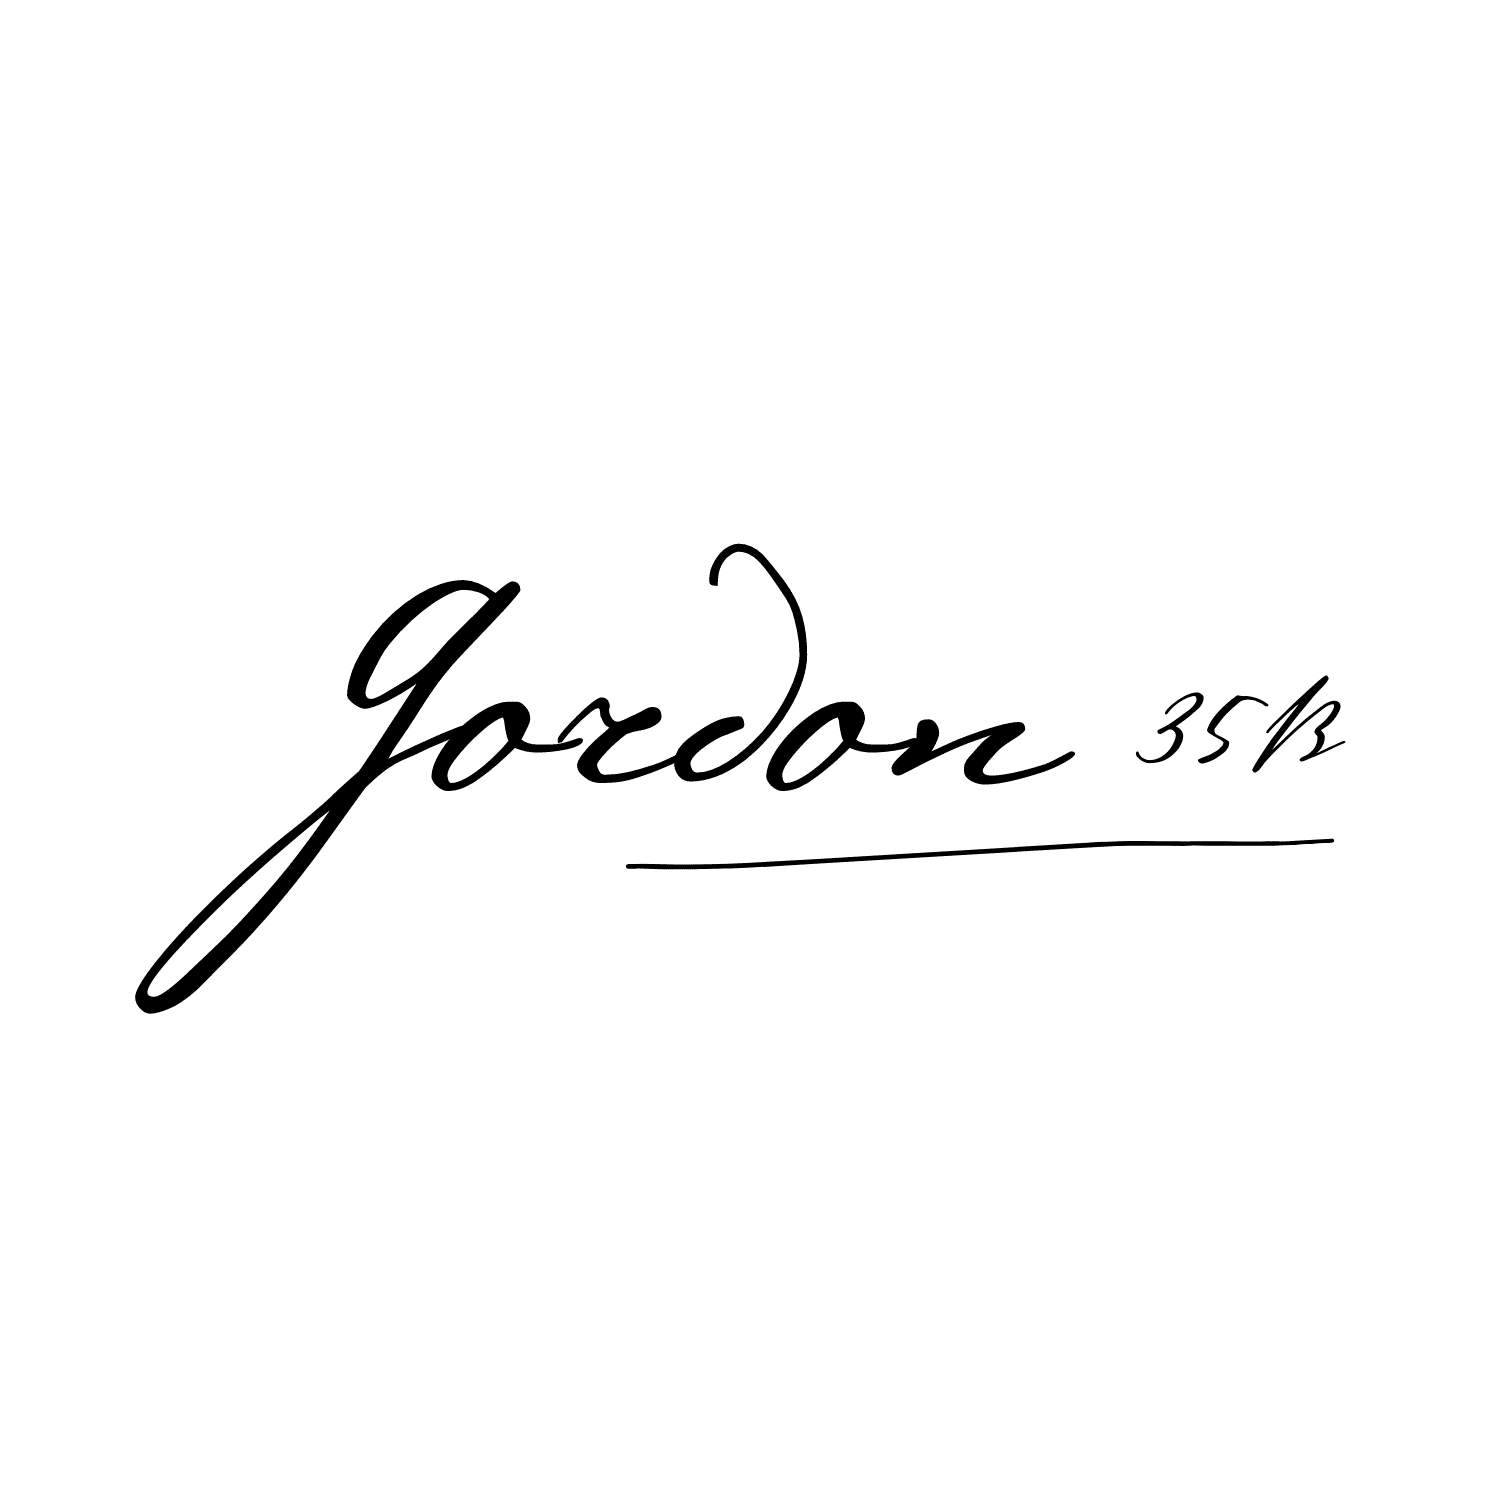 לוגו גורדון 35ב